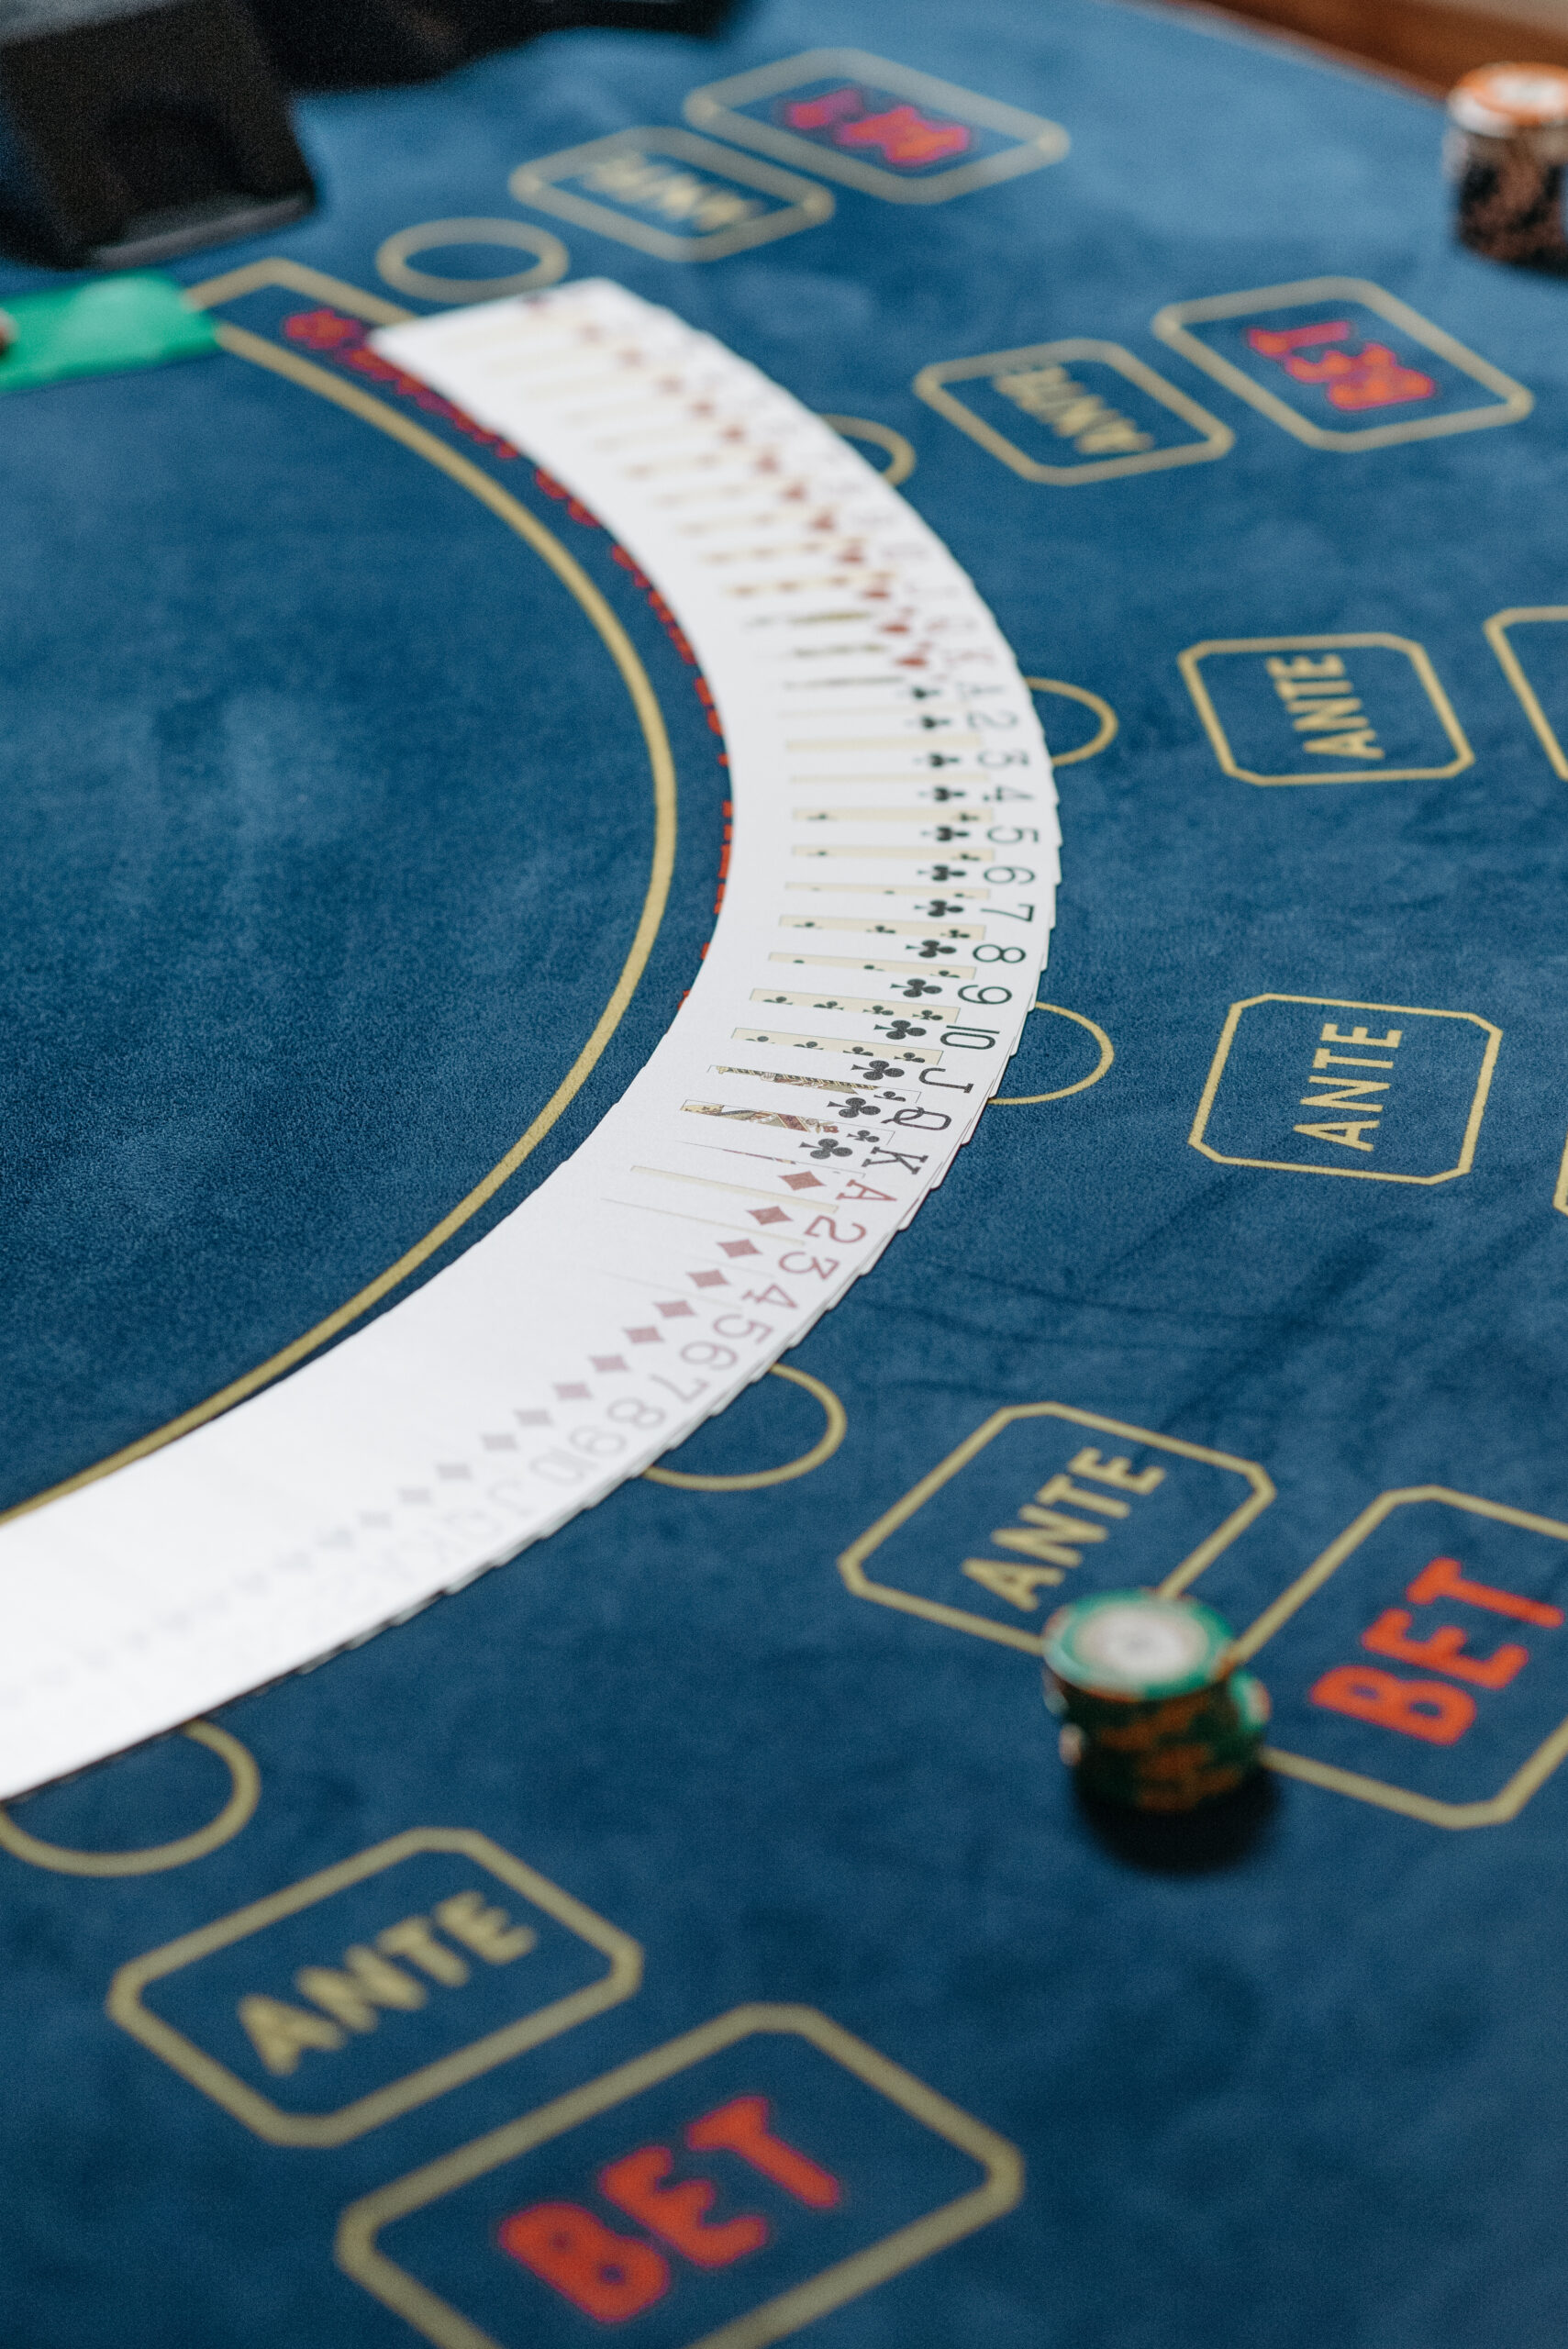 Sicherheitstipps für skandinavische Online-Casino-Spieler